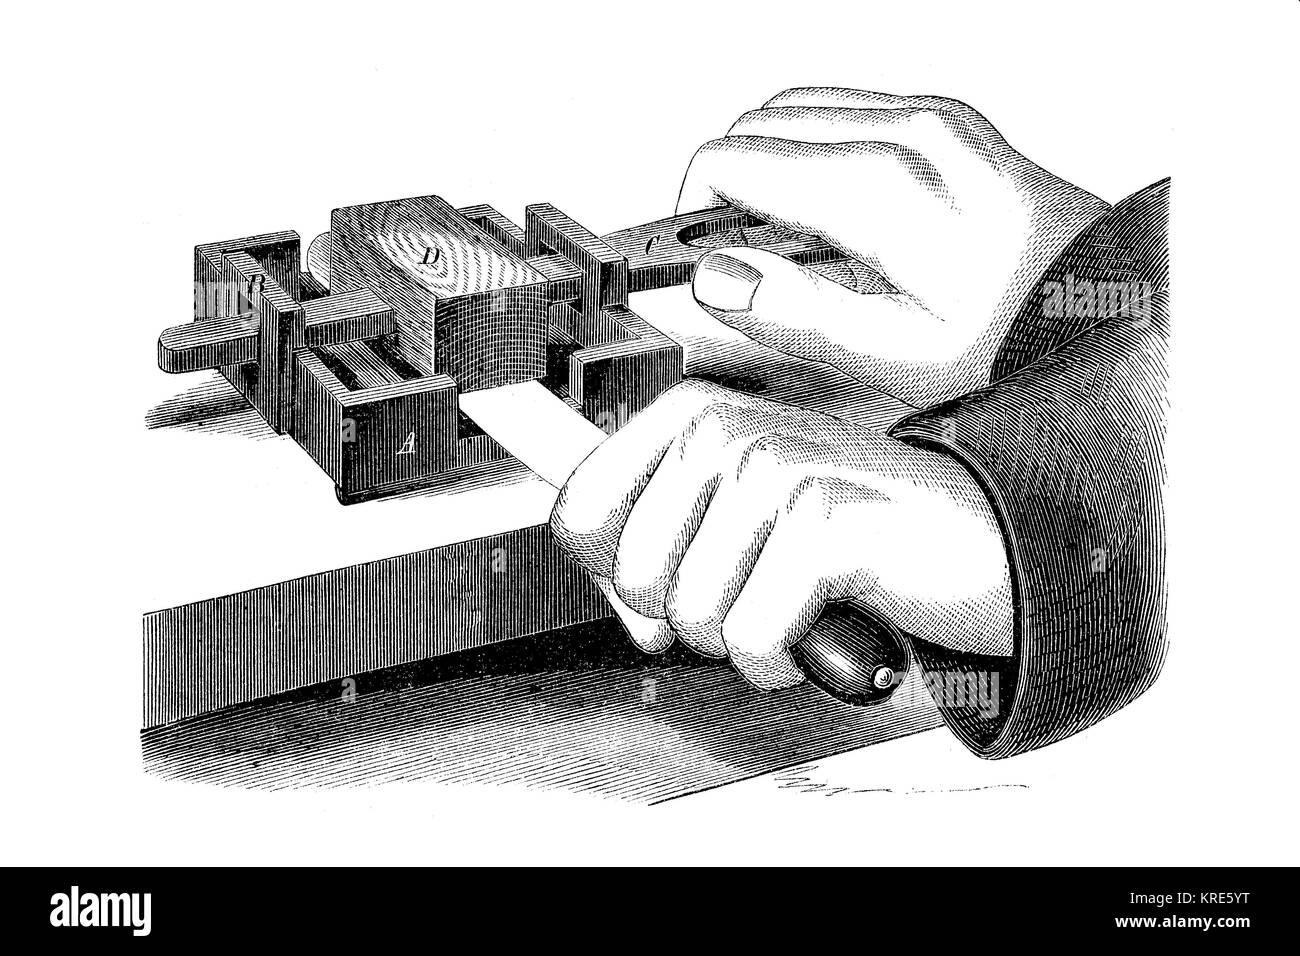 Los inventos, aparatos para la cuchilla de limpieza, limpieza y afilado, mejor reproducción digital de una xilografía desde el año 1880 Foto de stock